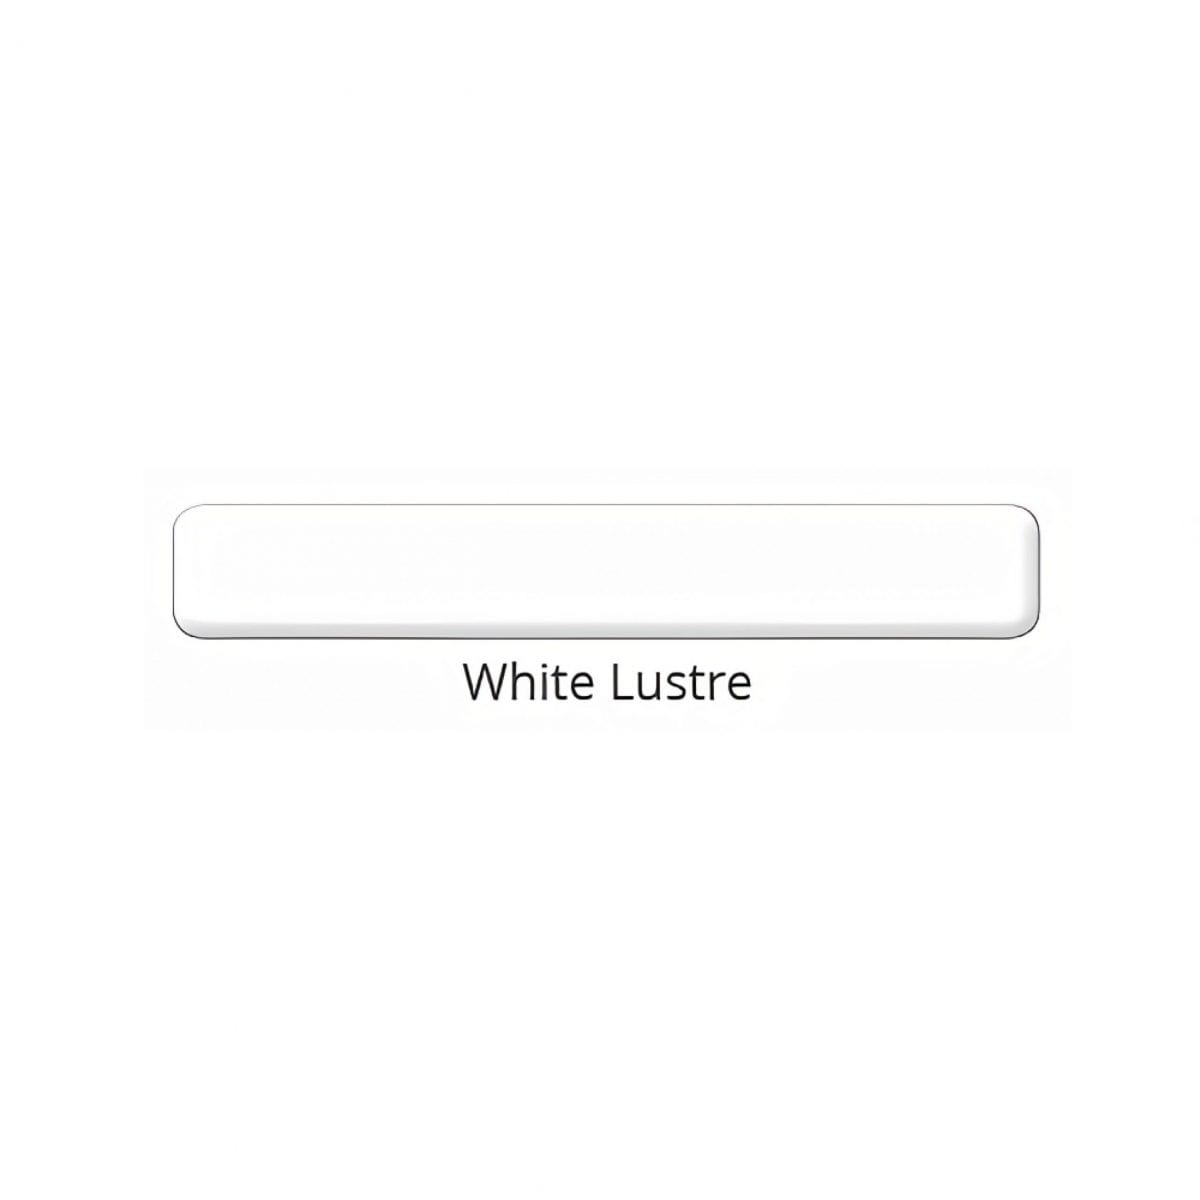 White lustre color